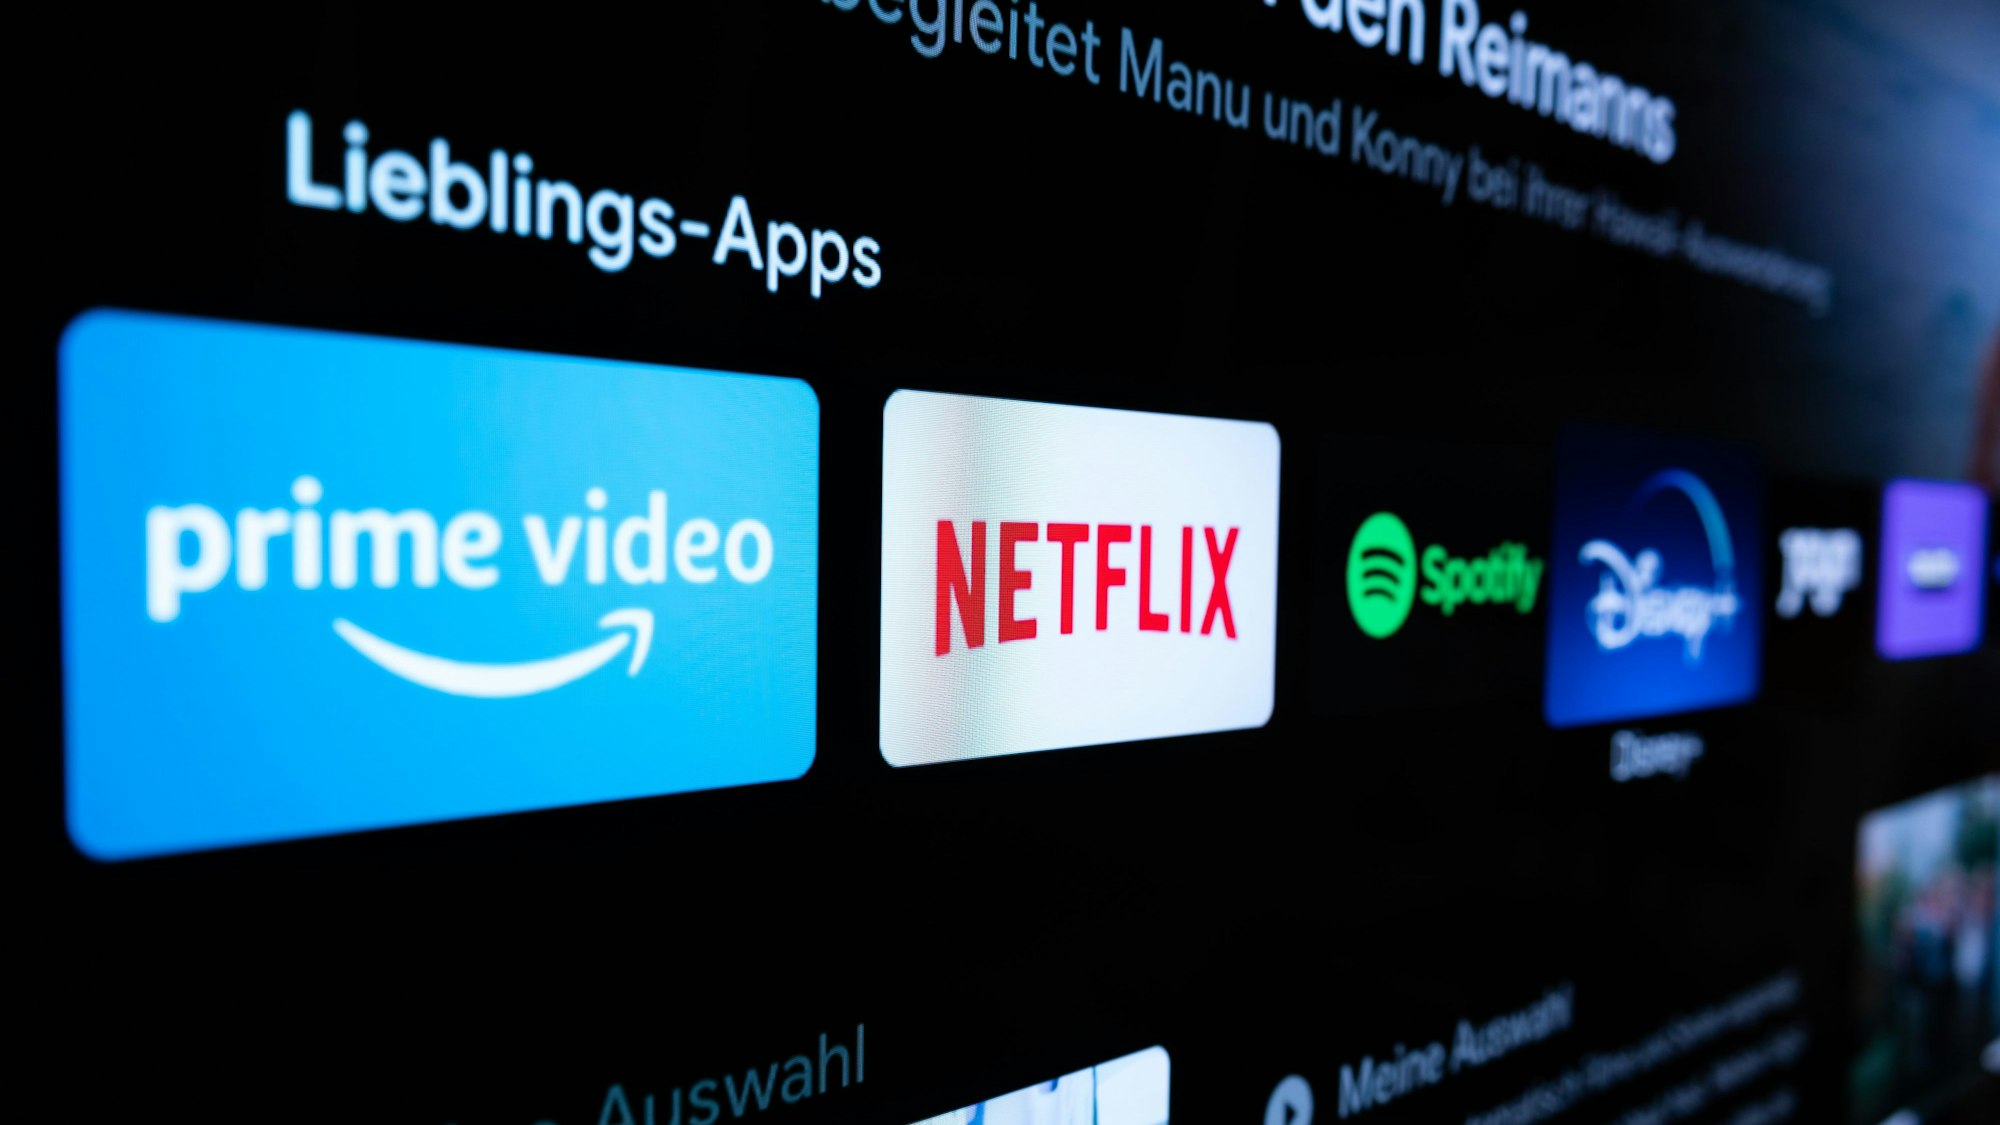 Auf einem Fernseher in einer Wohnung sind verschiedene Streaming-Dienste, darunter Amazon Prime Video (l-r), Netflix, Spotify und Disney+ zu sehen.